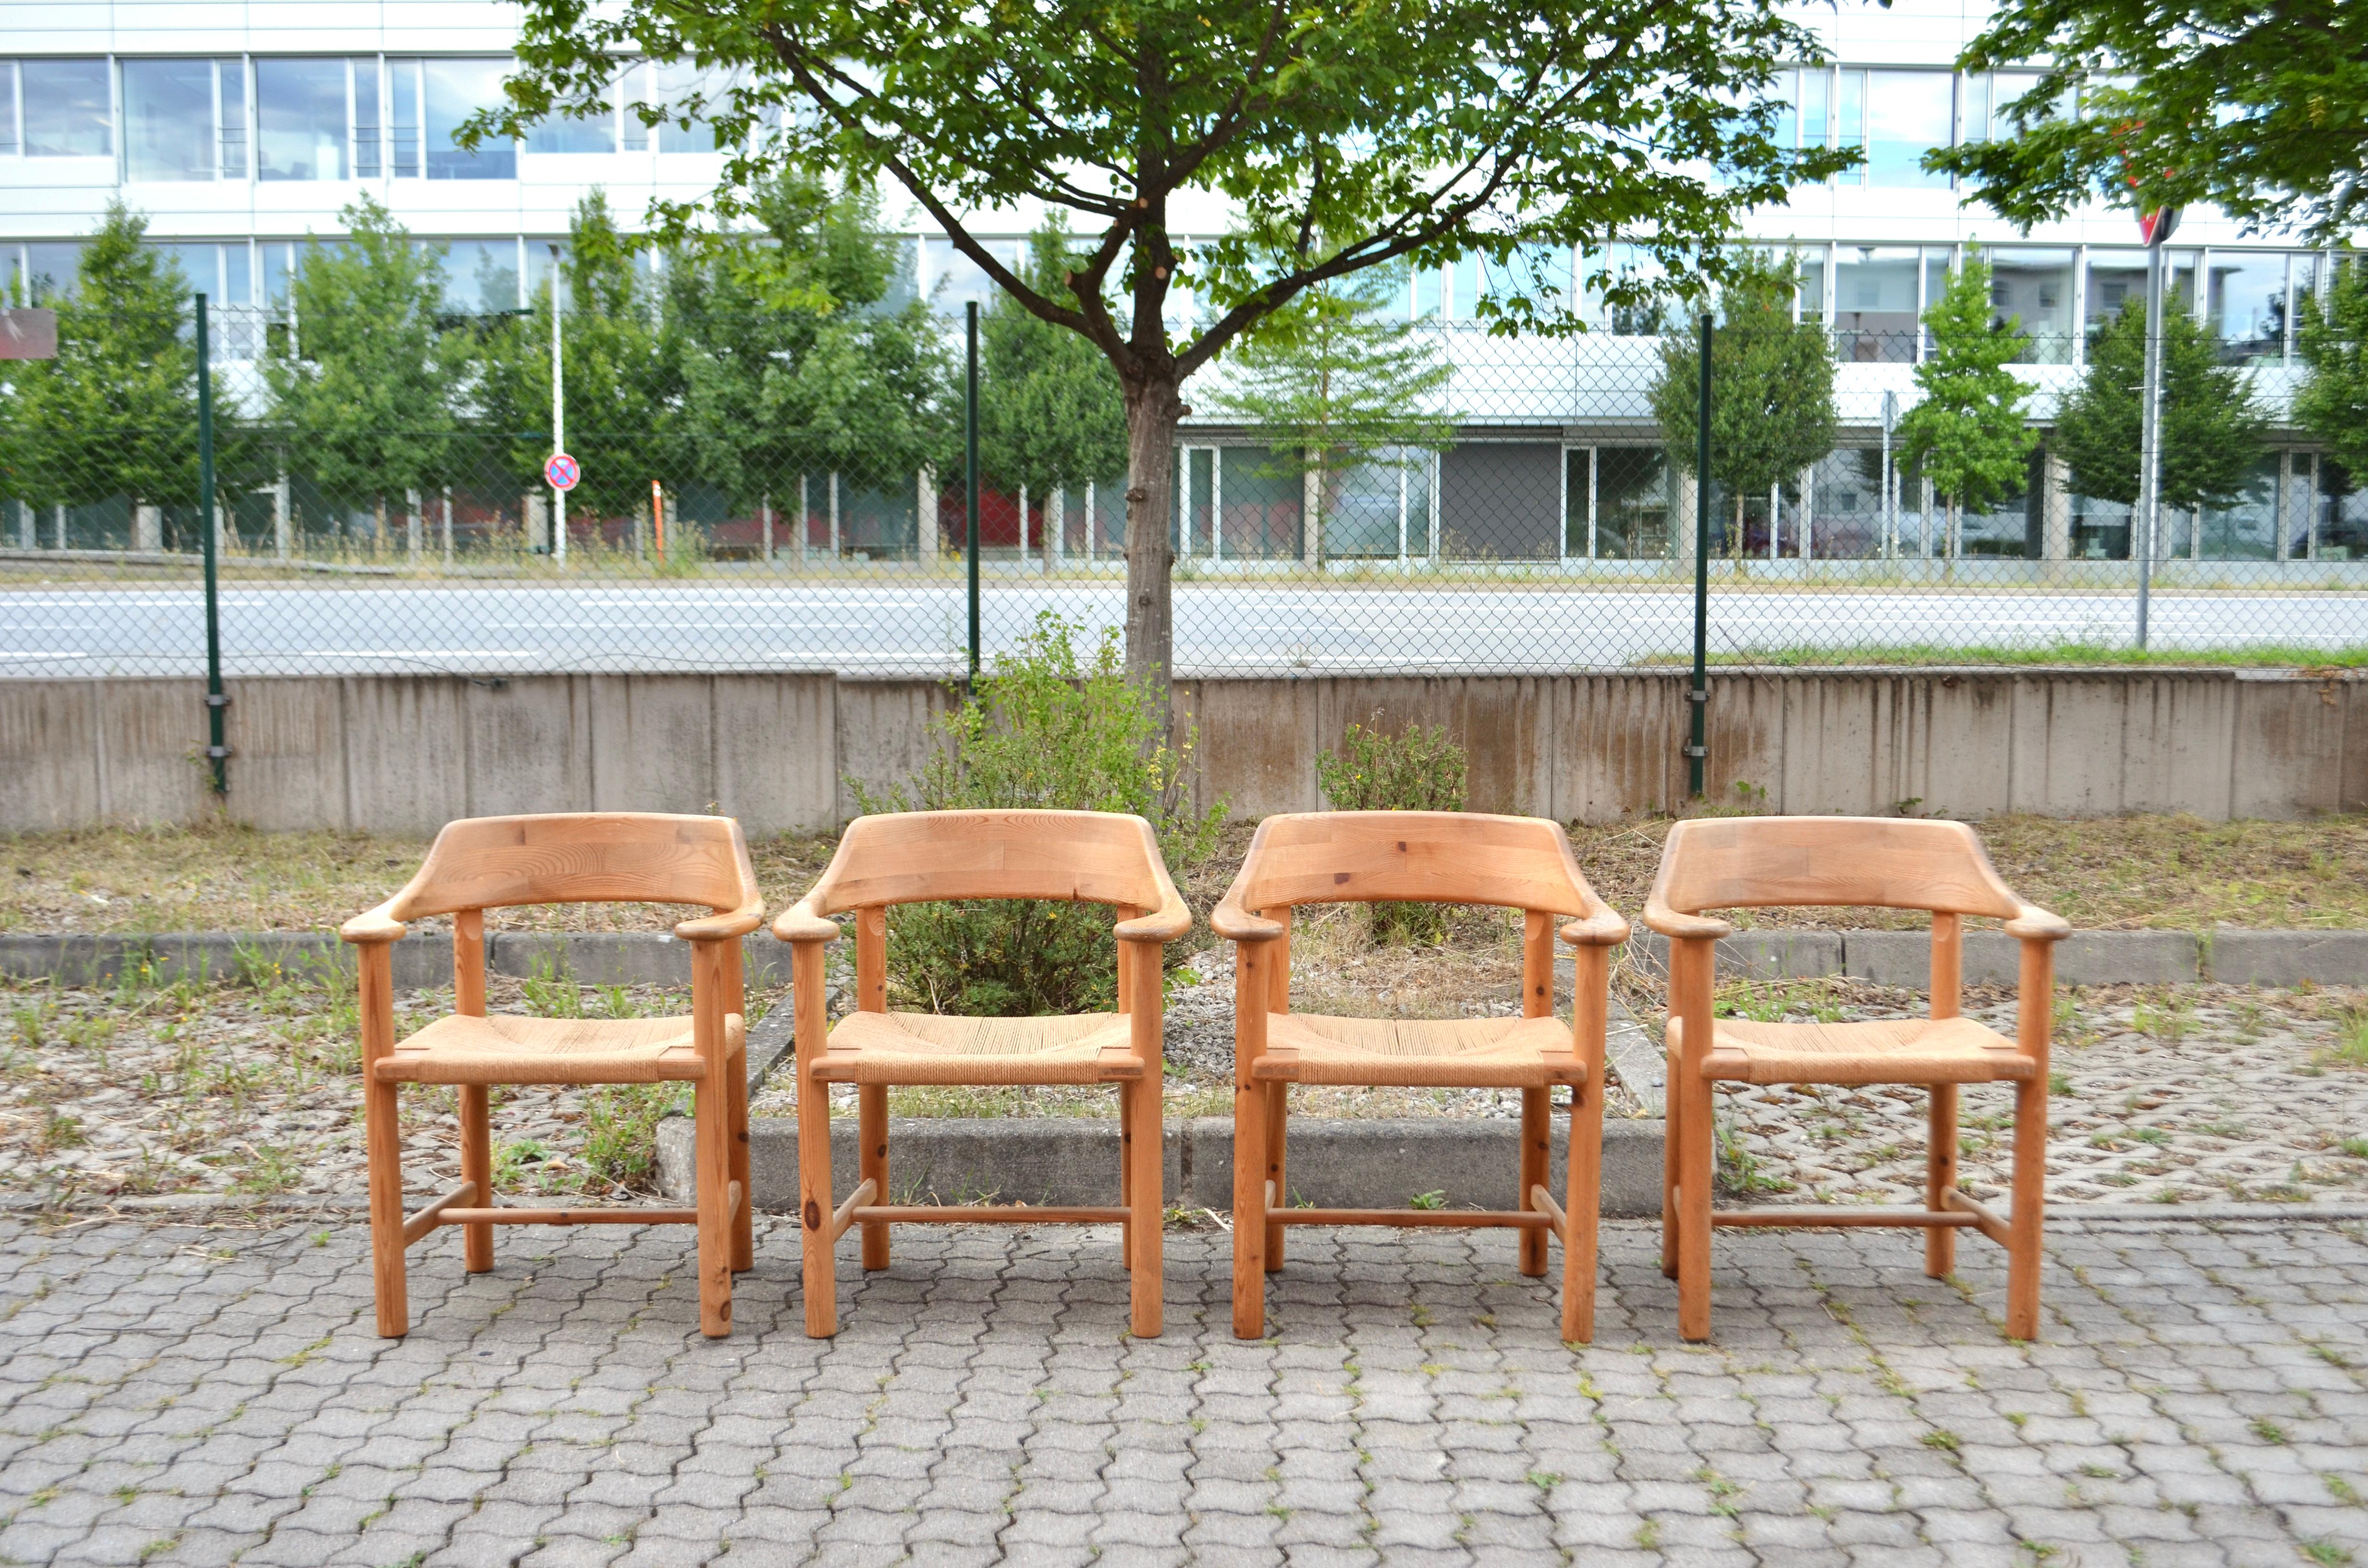 Chaises de salle à manger conçues par Rainer Daumiller et fabriquées par Hirtshals Savvaerk.
Modèle avec corde à papier et accoudoirs.
Bois massif de pin scandinave joliment patiné.
Ces chaises sont très confortables.

Ensemble de 4